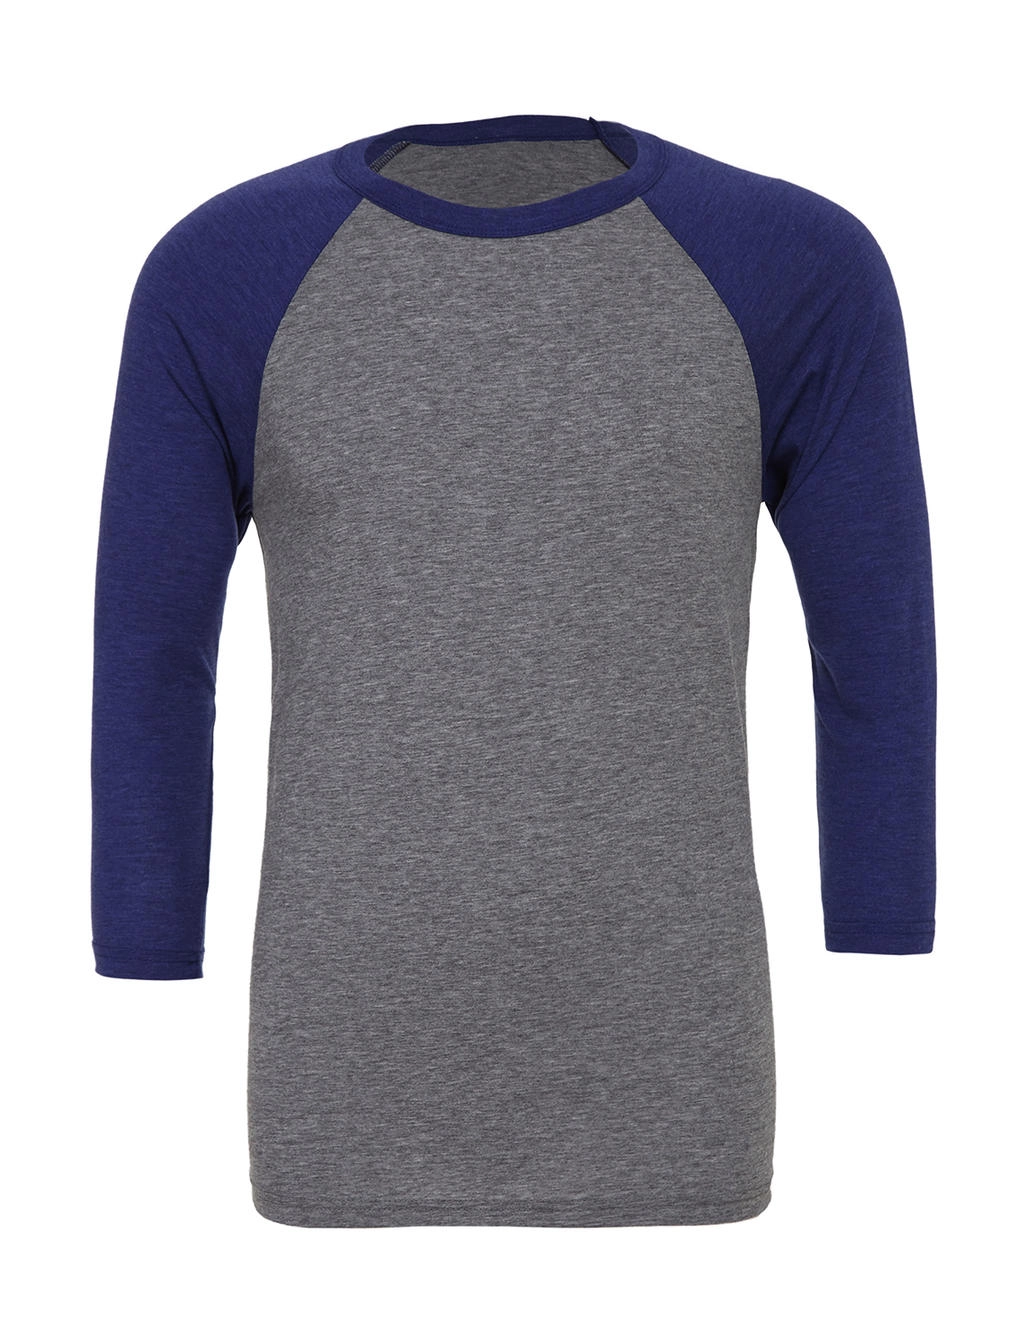 Unisex 3/4 Sleeve Baseball T-Shirt zum Besticken und Bedrucken in der Farbe Grey/Navy Triblend mit Ihren Logo, Schriftzug oder Motiv.